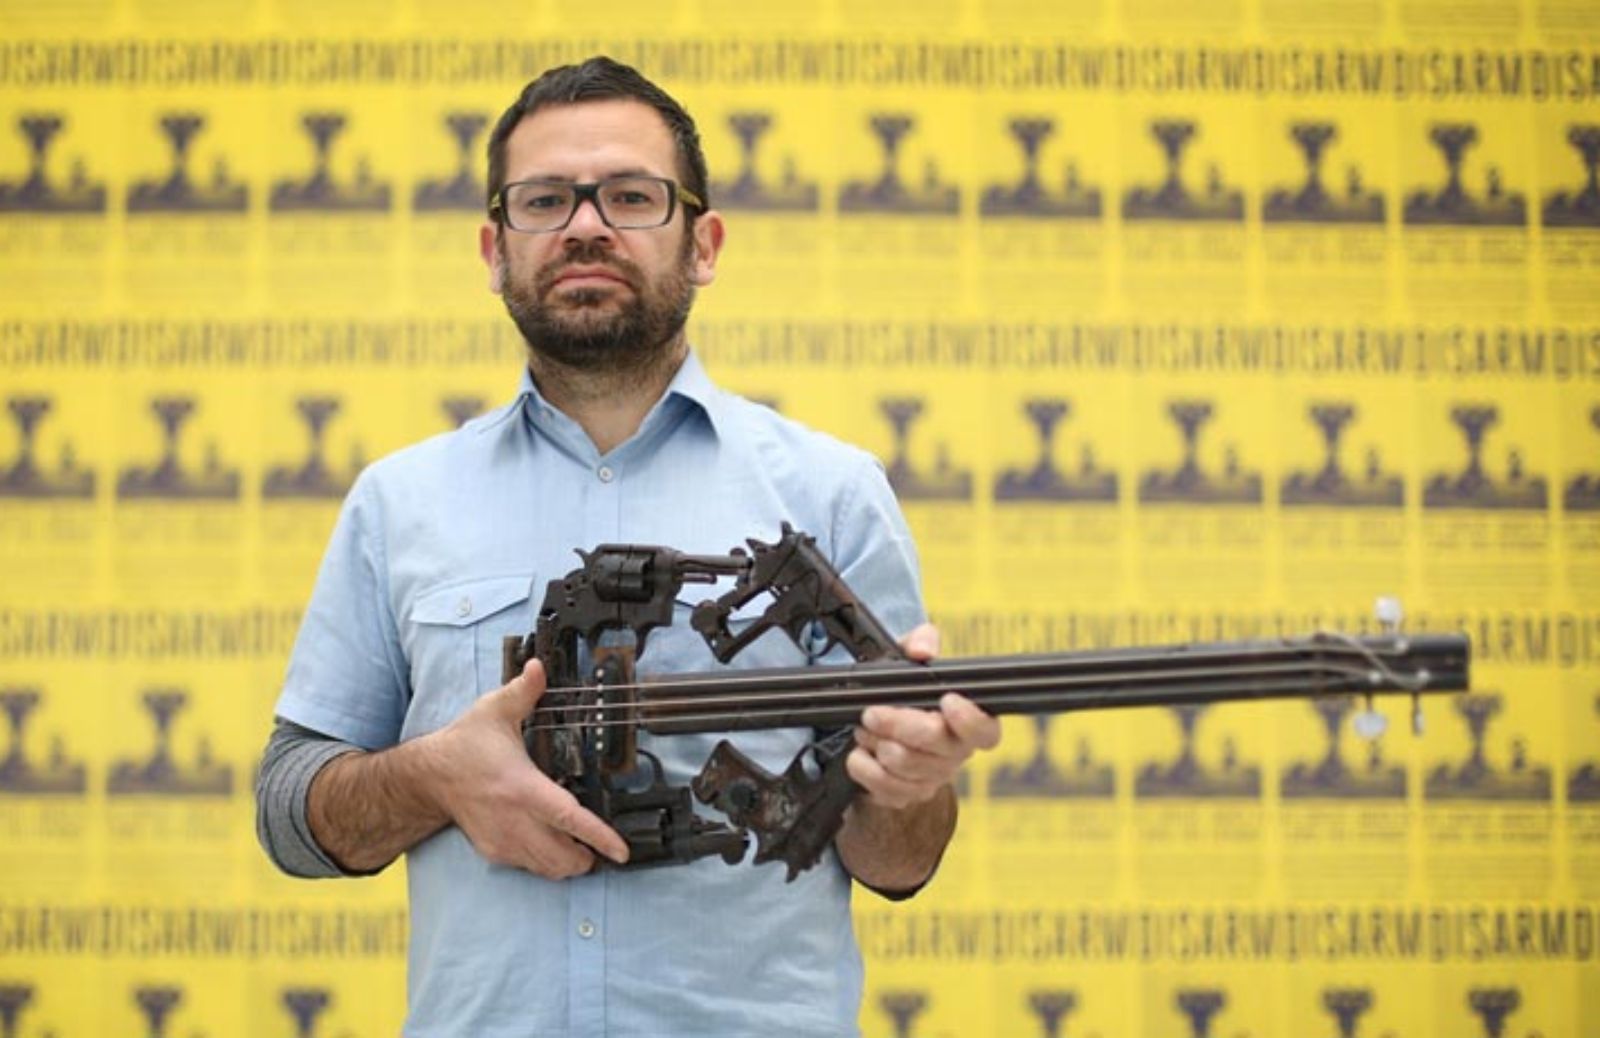 Armi che diventano sculture: il riciclo creativo diventa sociale